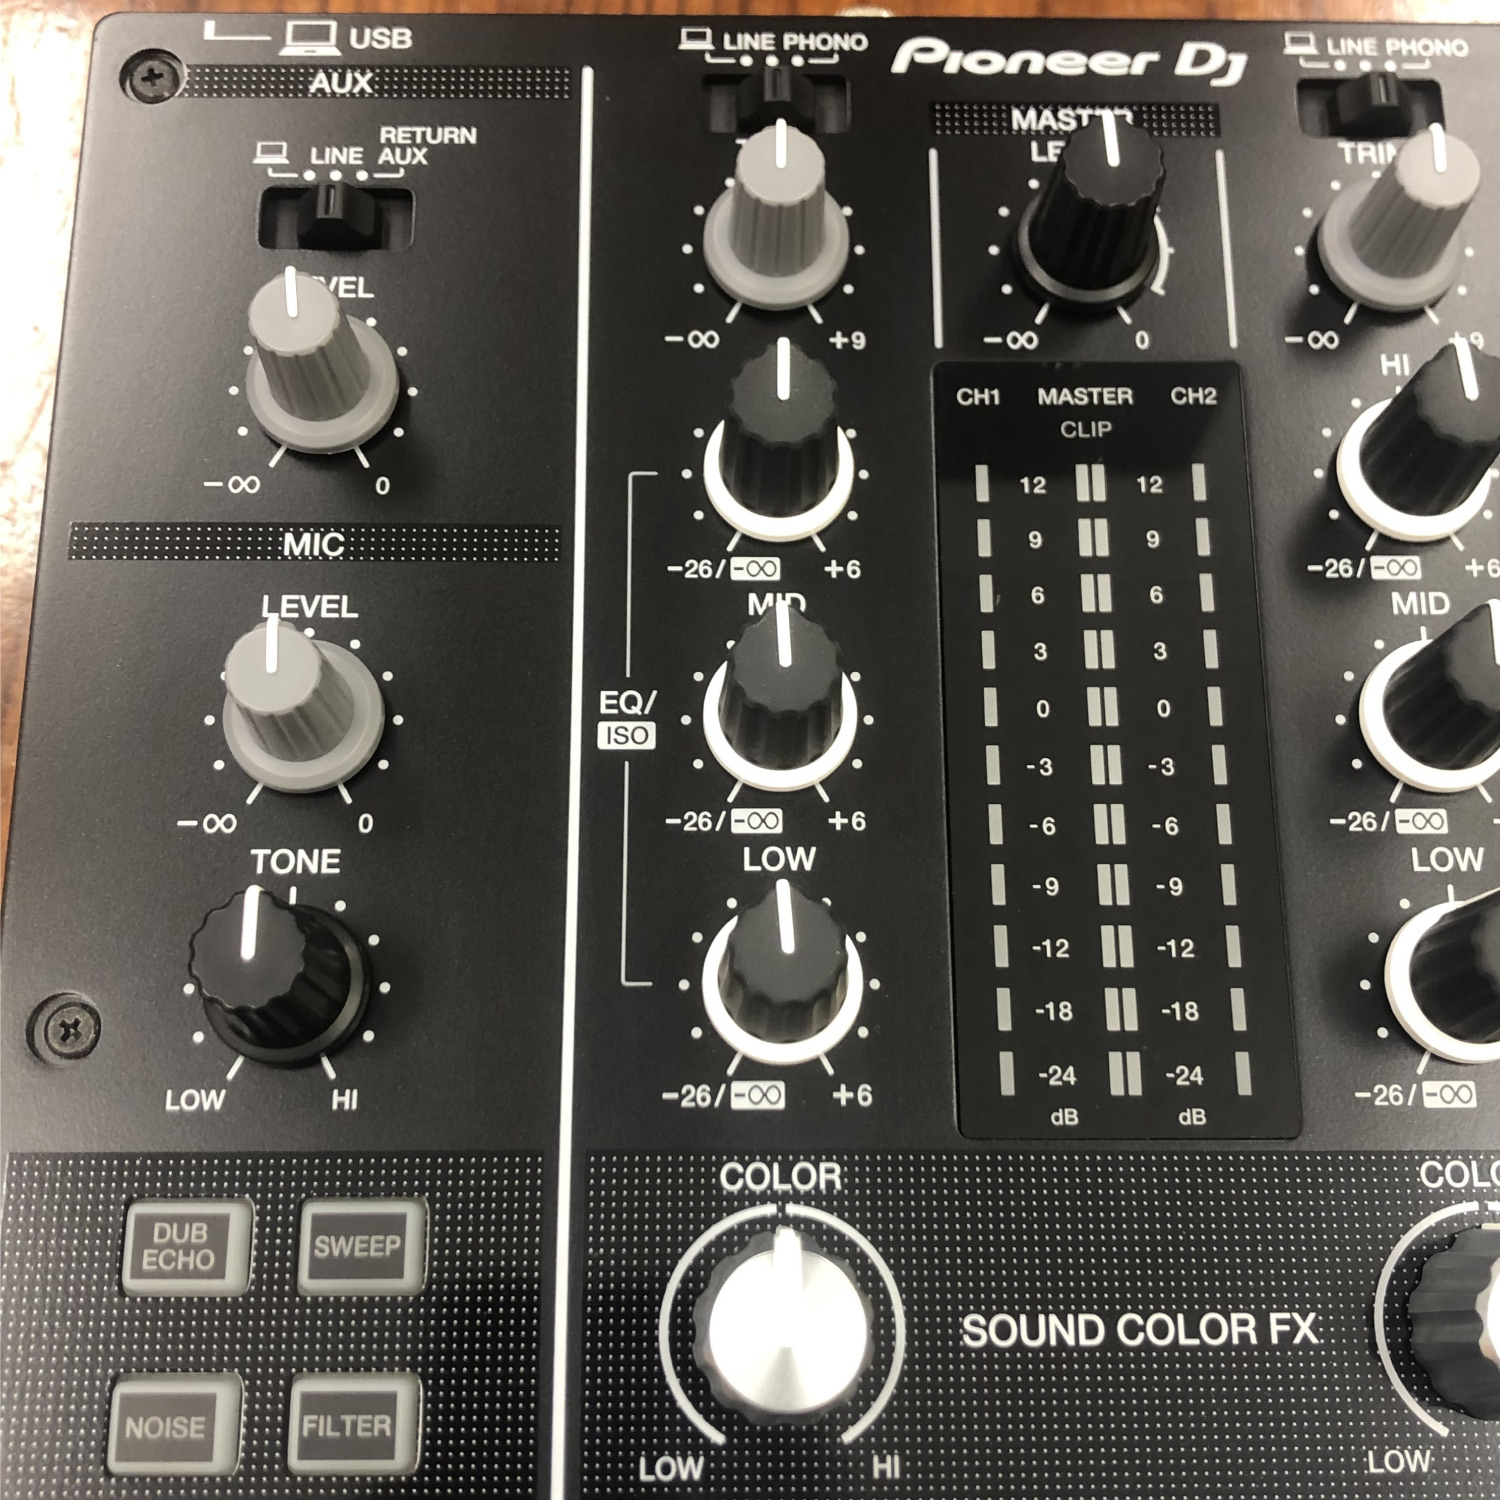 Pioneer - Pioneer DJミキサー DJM800【美品】の+aethiopien-botschaft.de